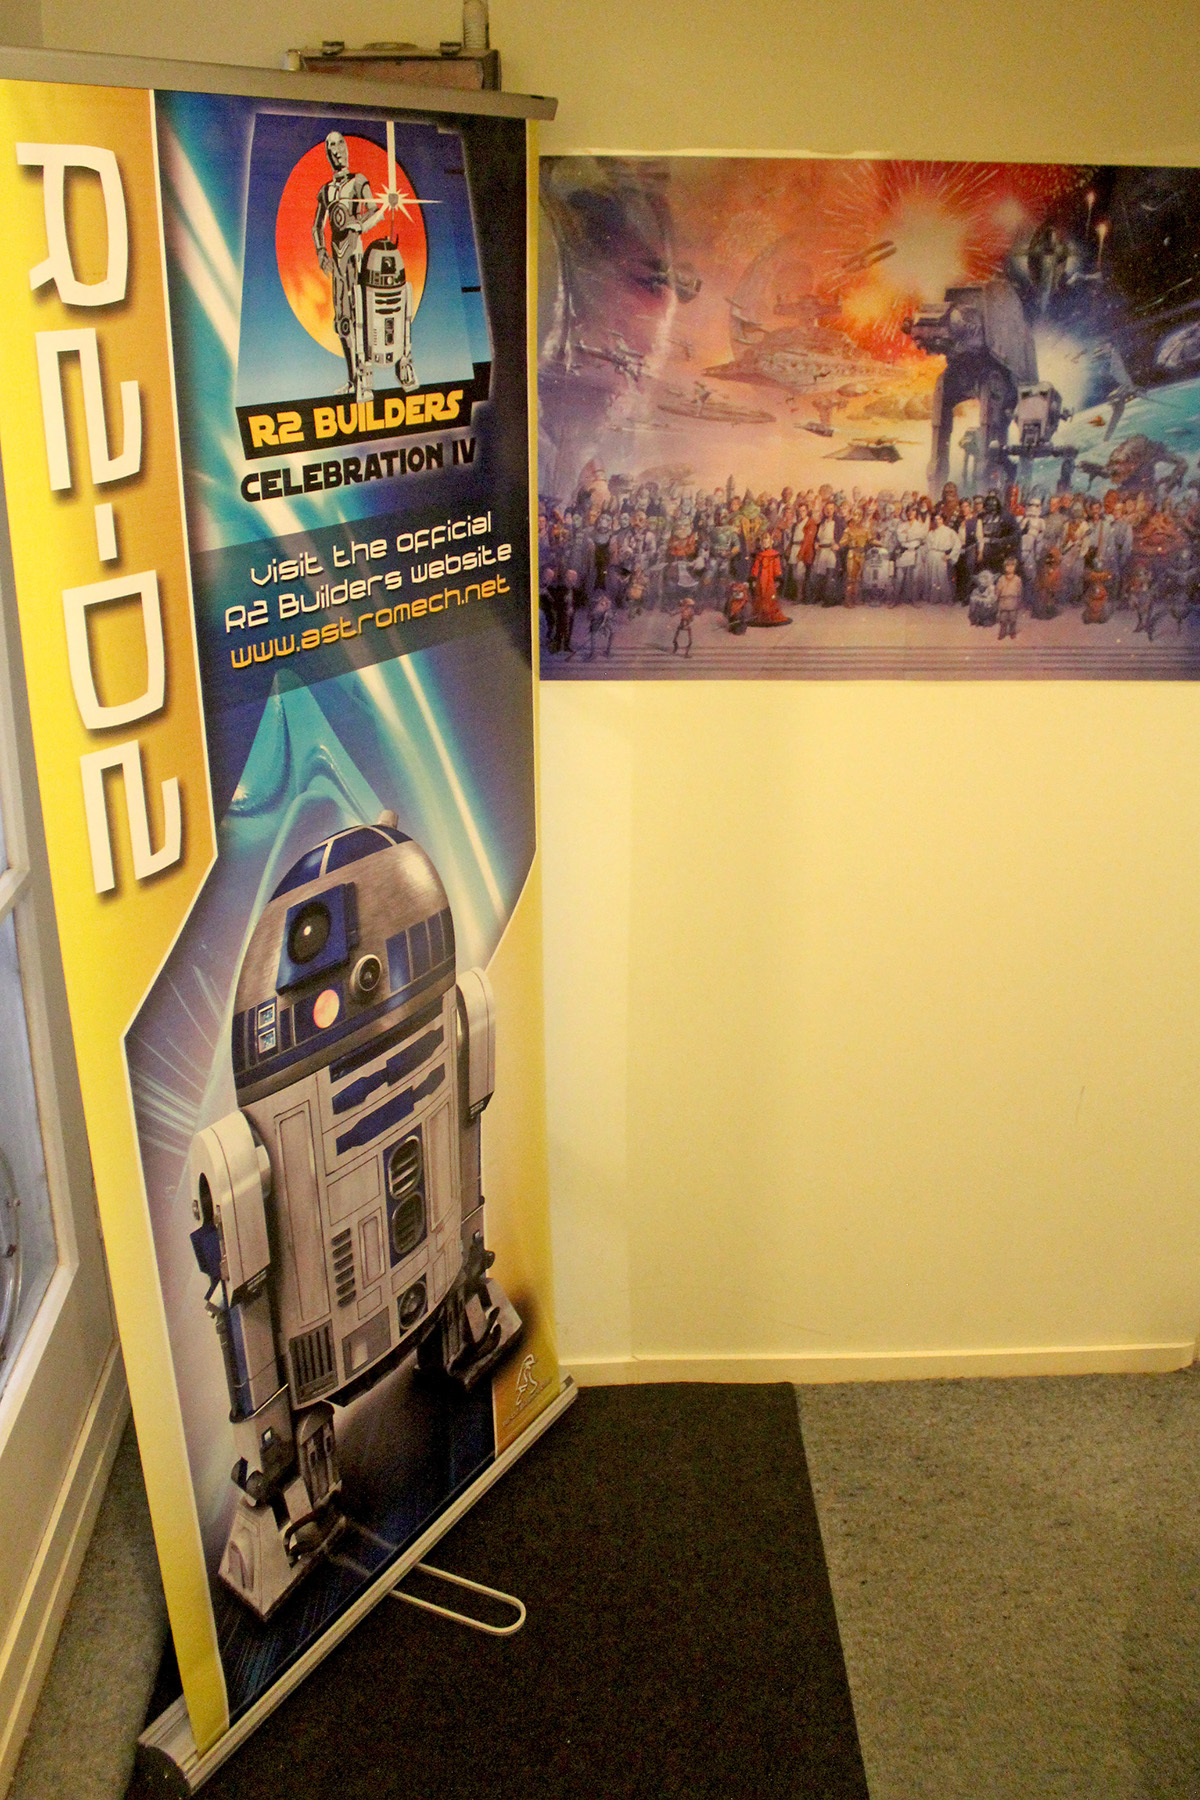 R2 Builders Celebration IV banner